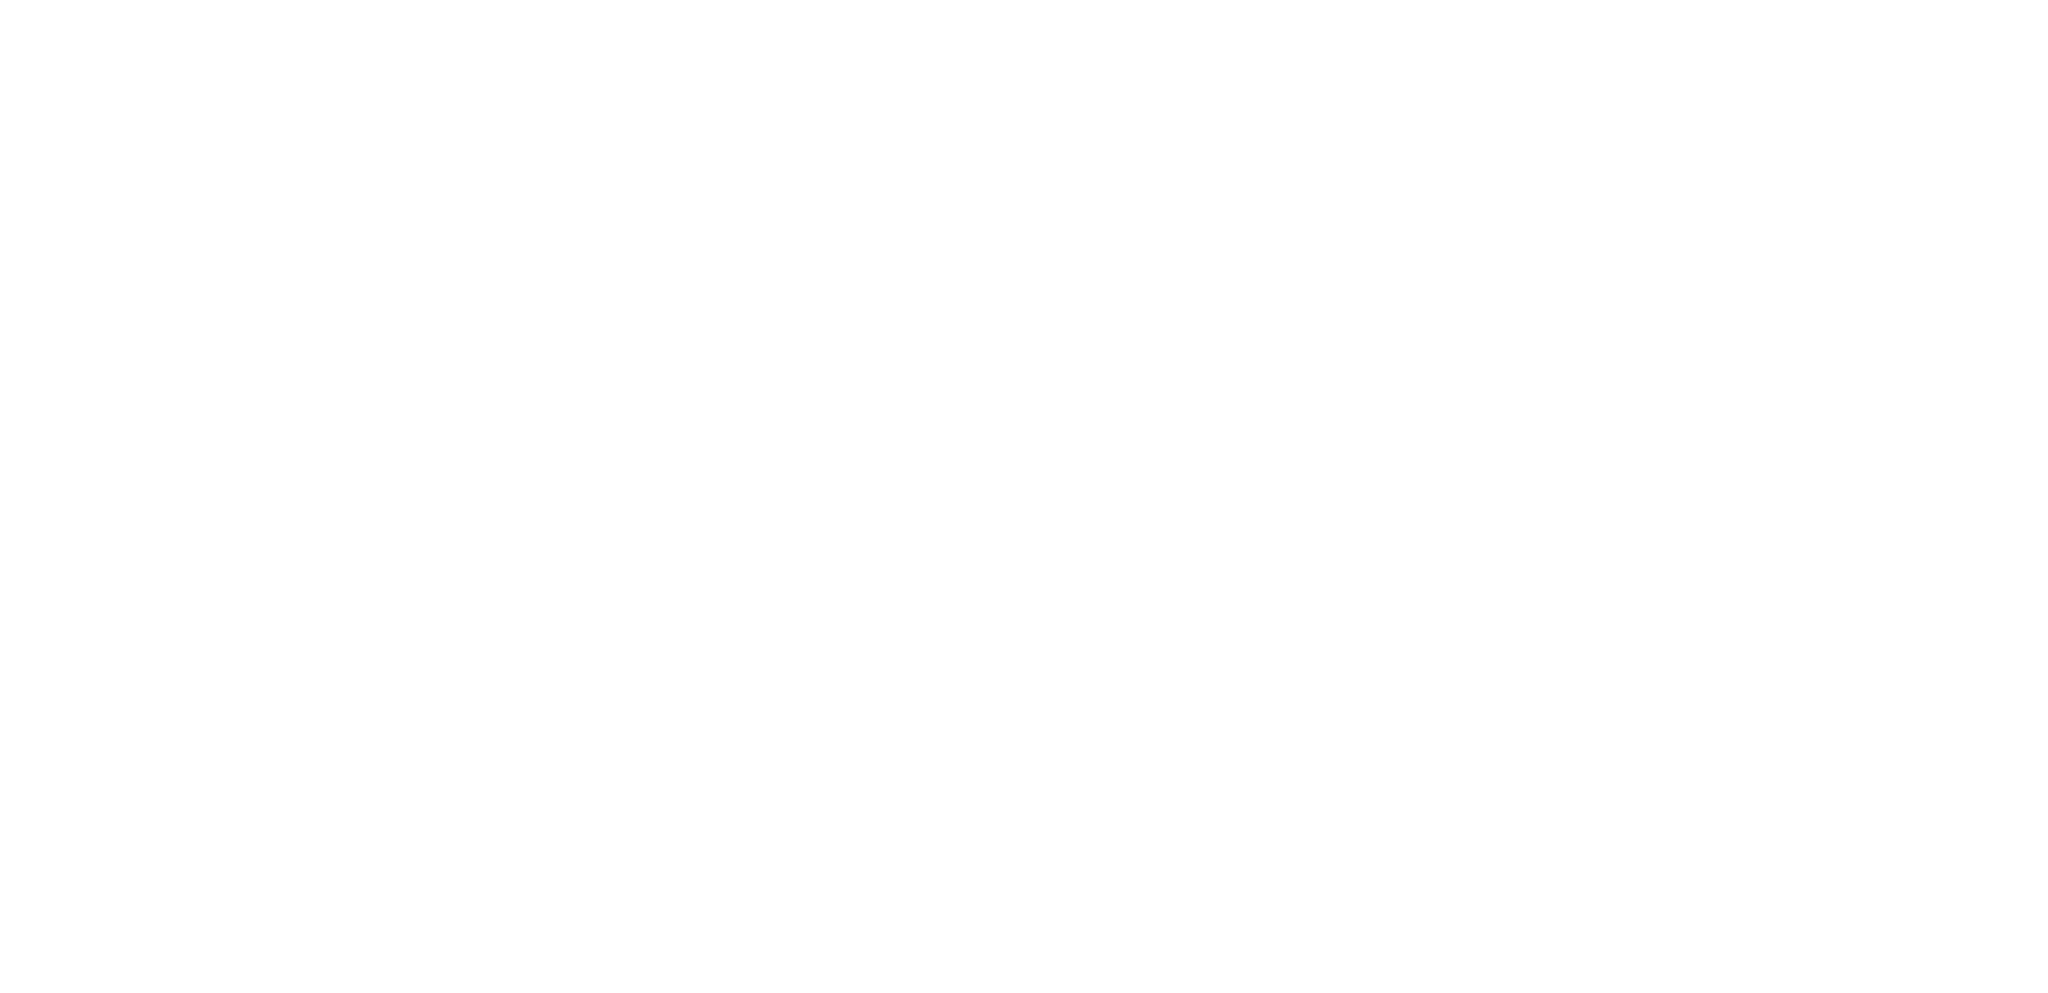 Myalcolzero